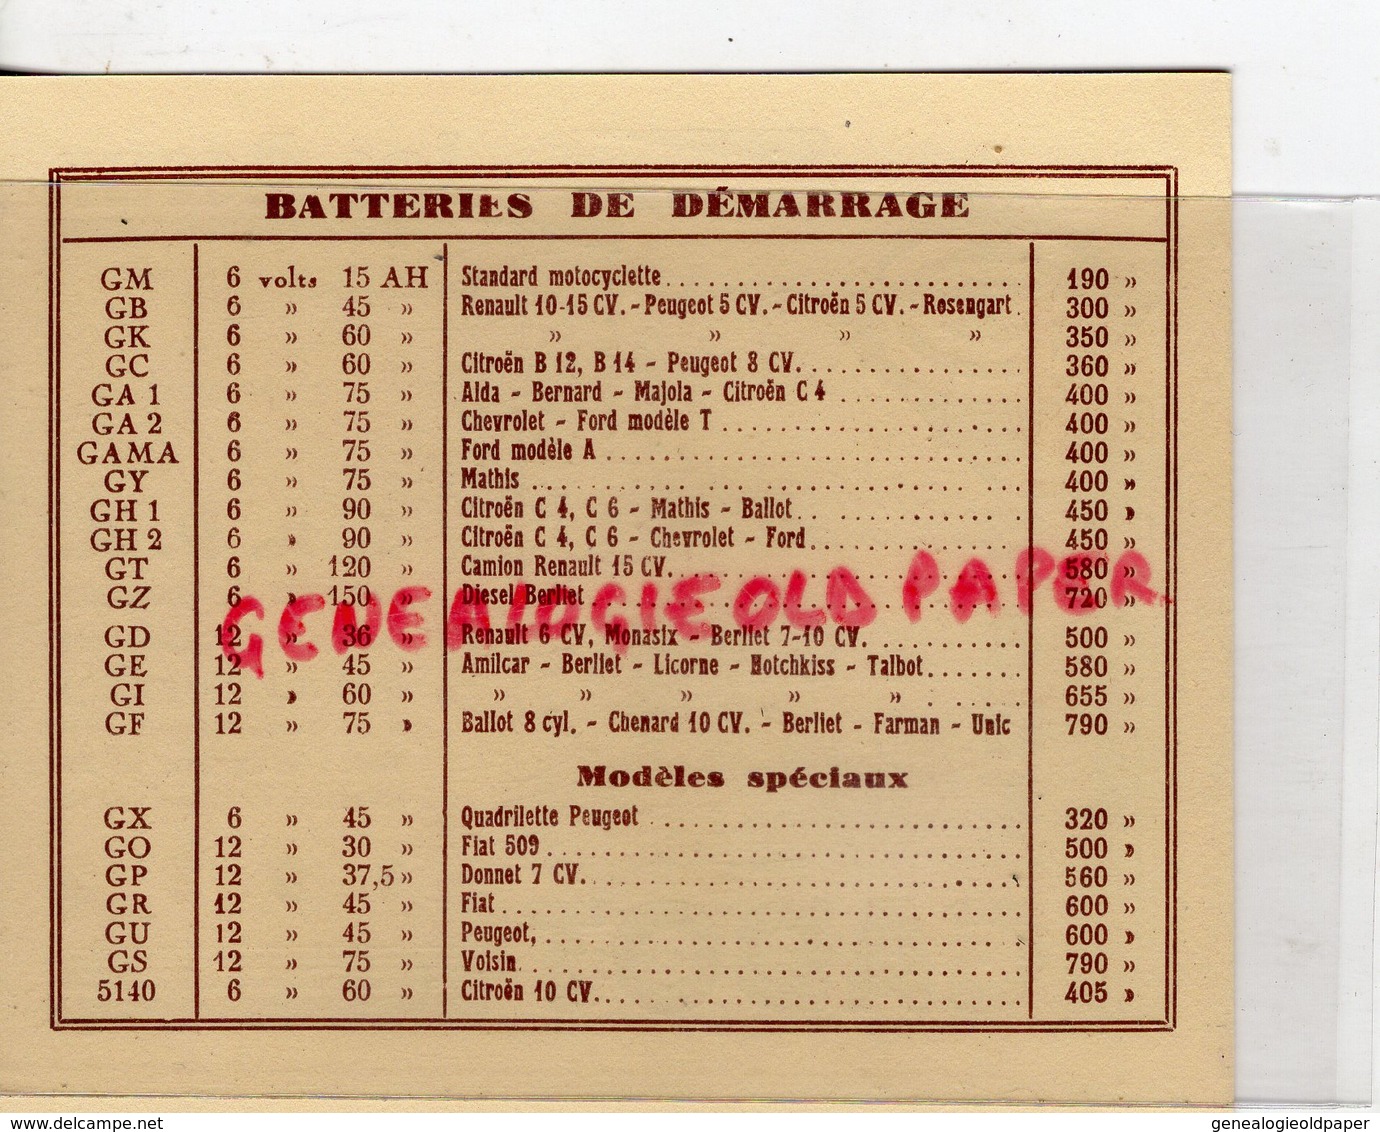 75- PARIS- ACCULULATEUR -LES ACCUS PAUL GADOT-S.A.P.A. 60 BOULEVARD DE LA SOMME-BATTERIE - RADIO TSF - 1932 - Automobil